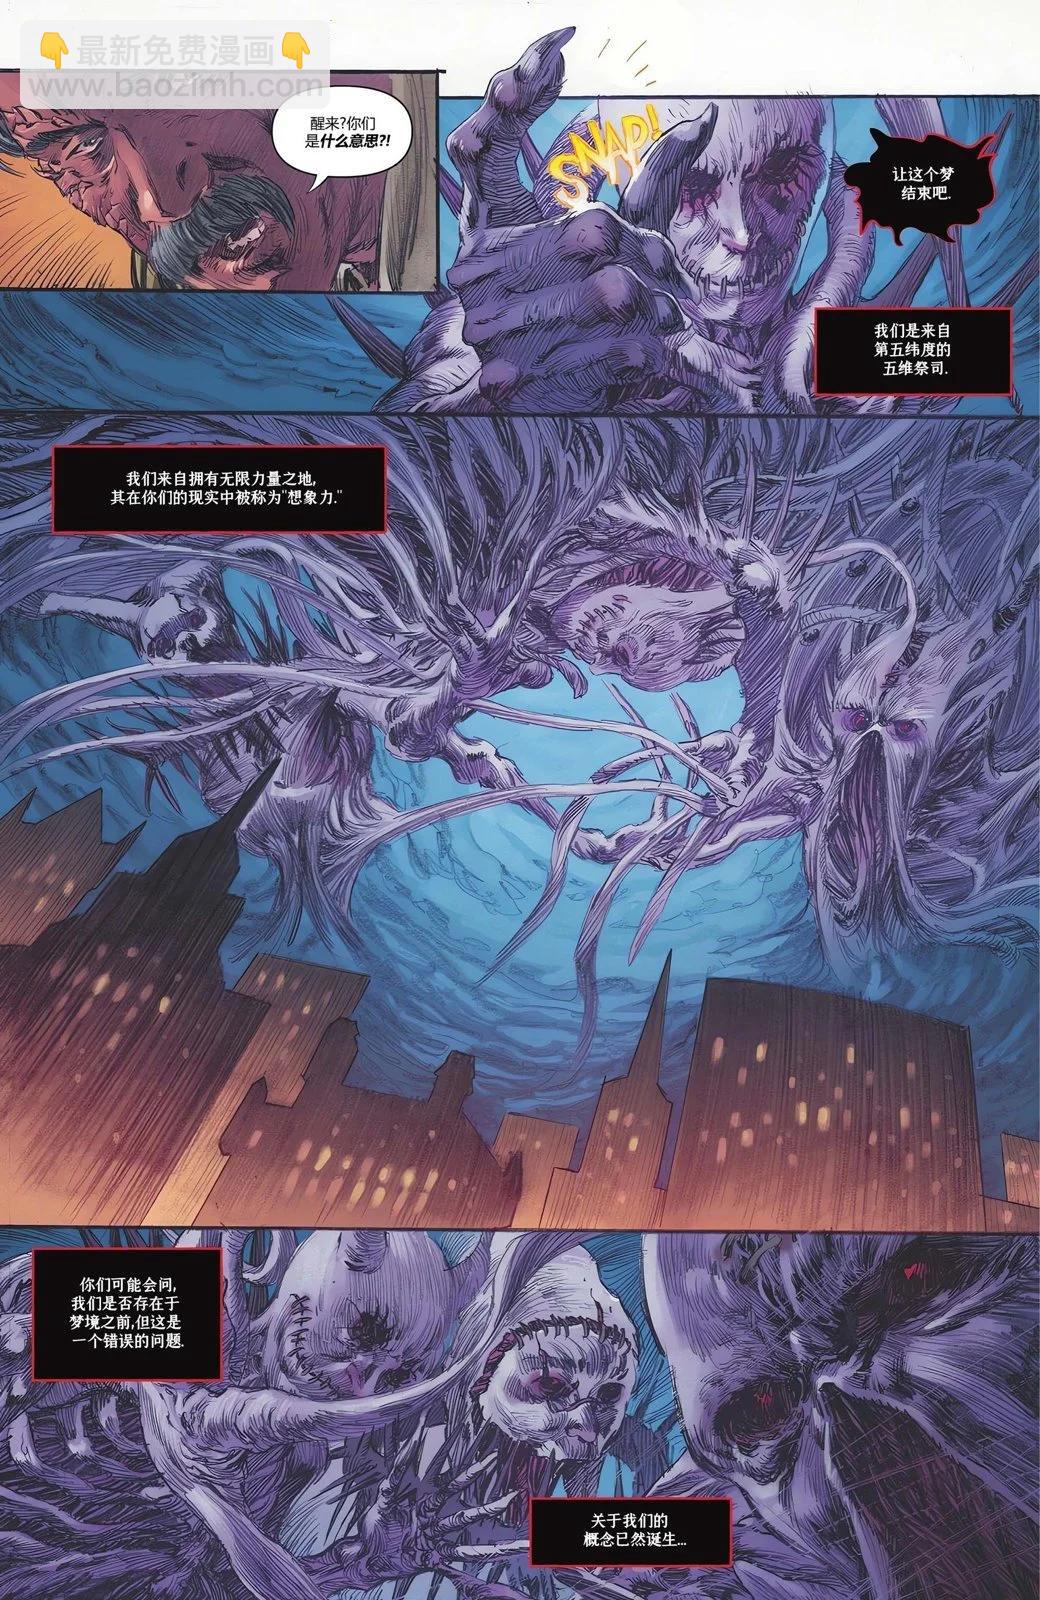 騎士驚魂 - 偵探漫畫#2 - 1